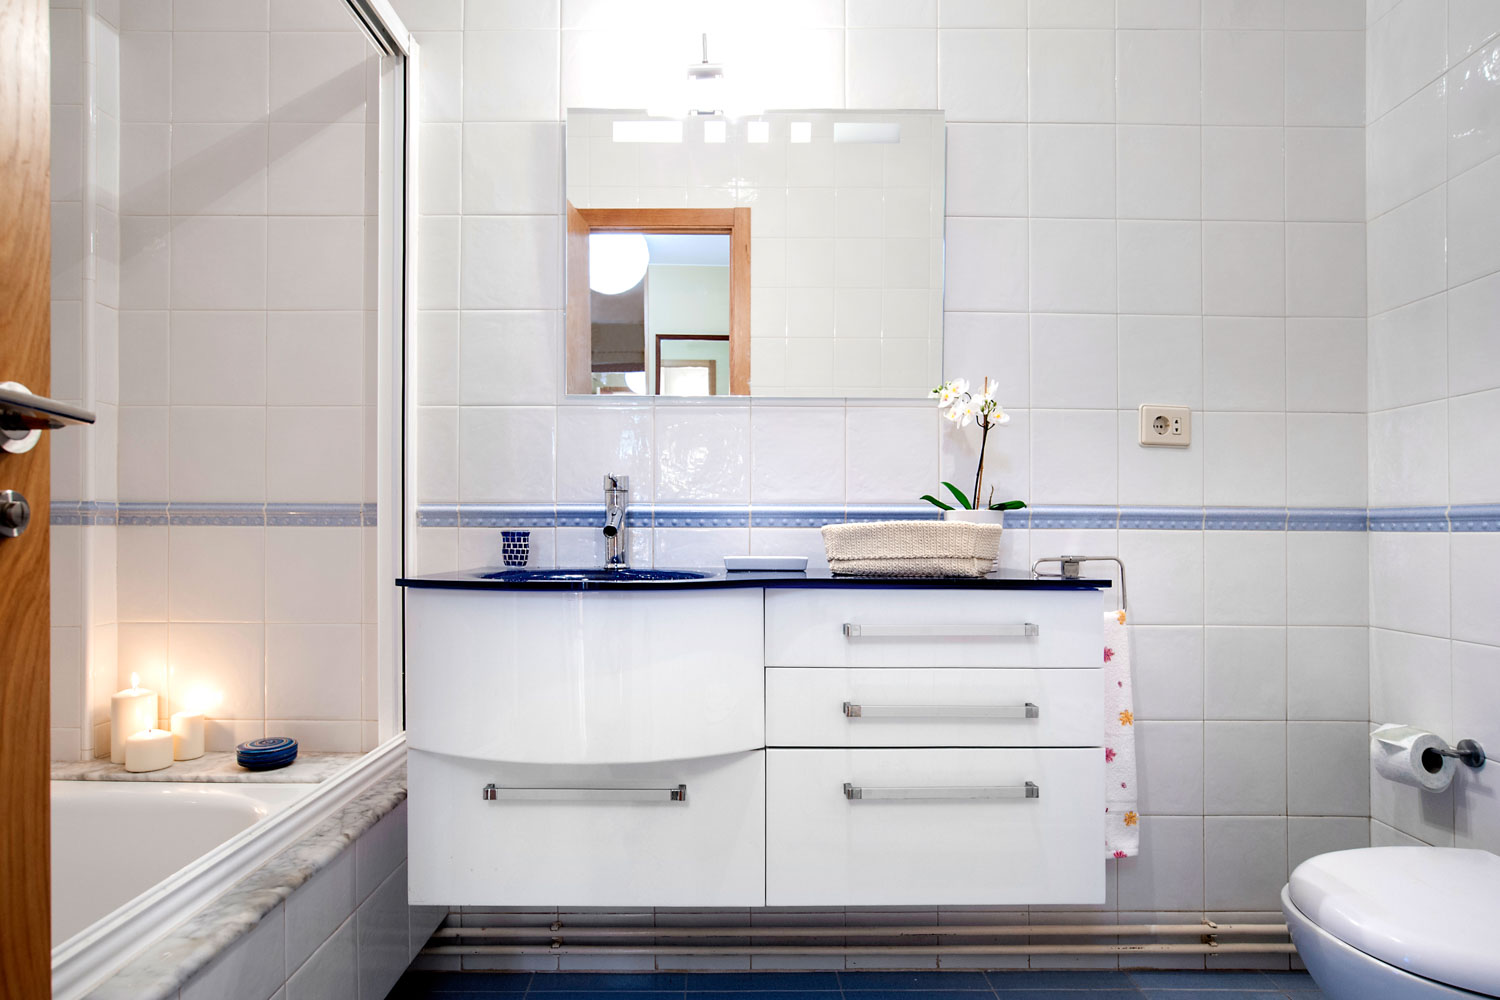 Detalle del mueble del baño lacado en blanco y lavabo en azul